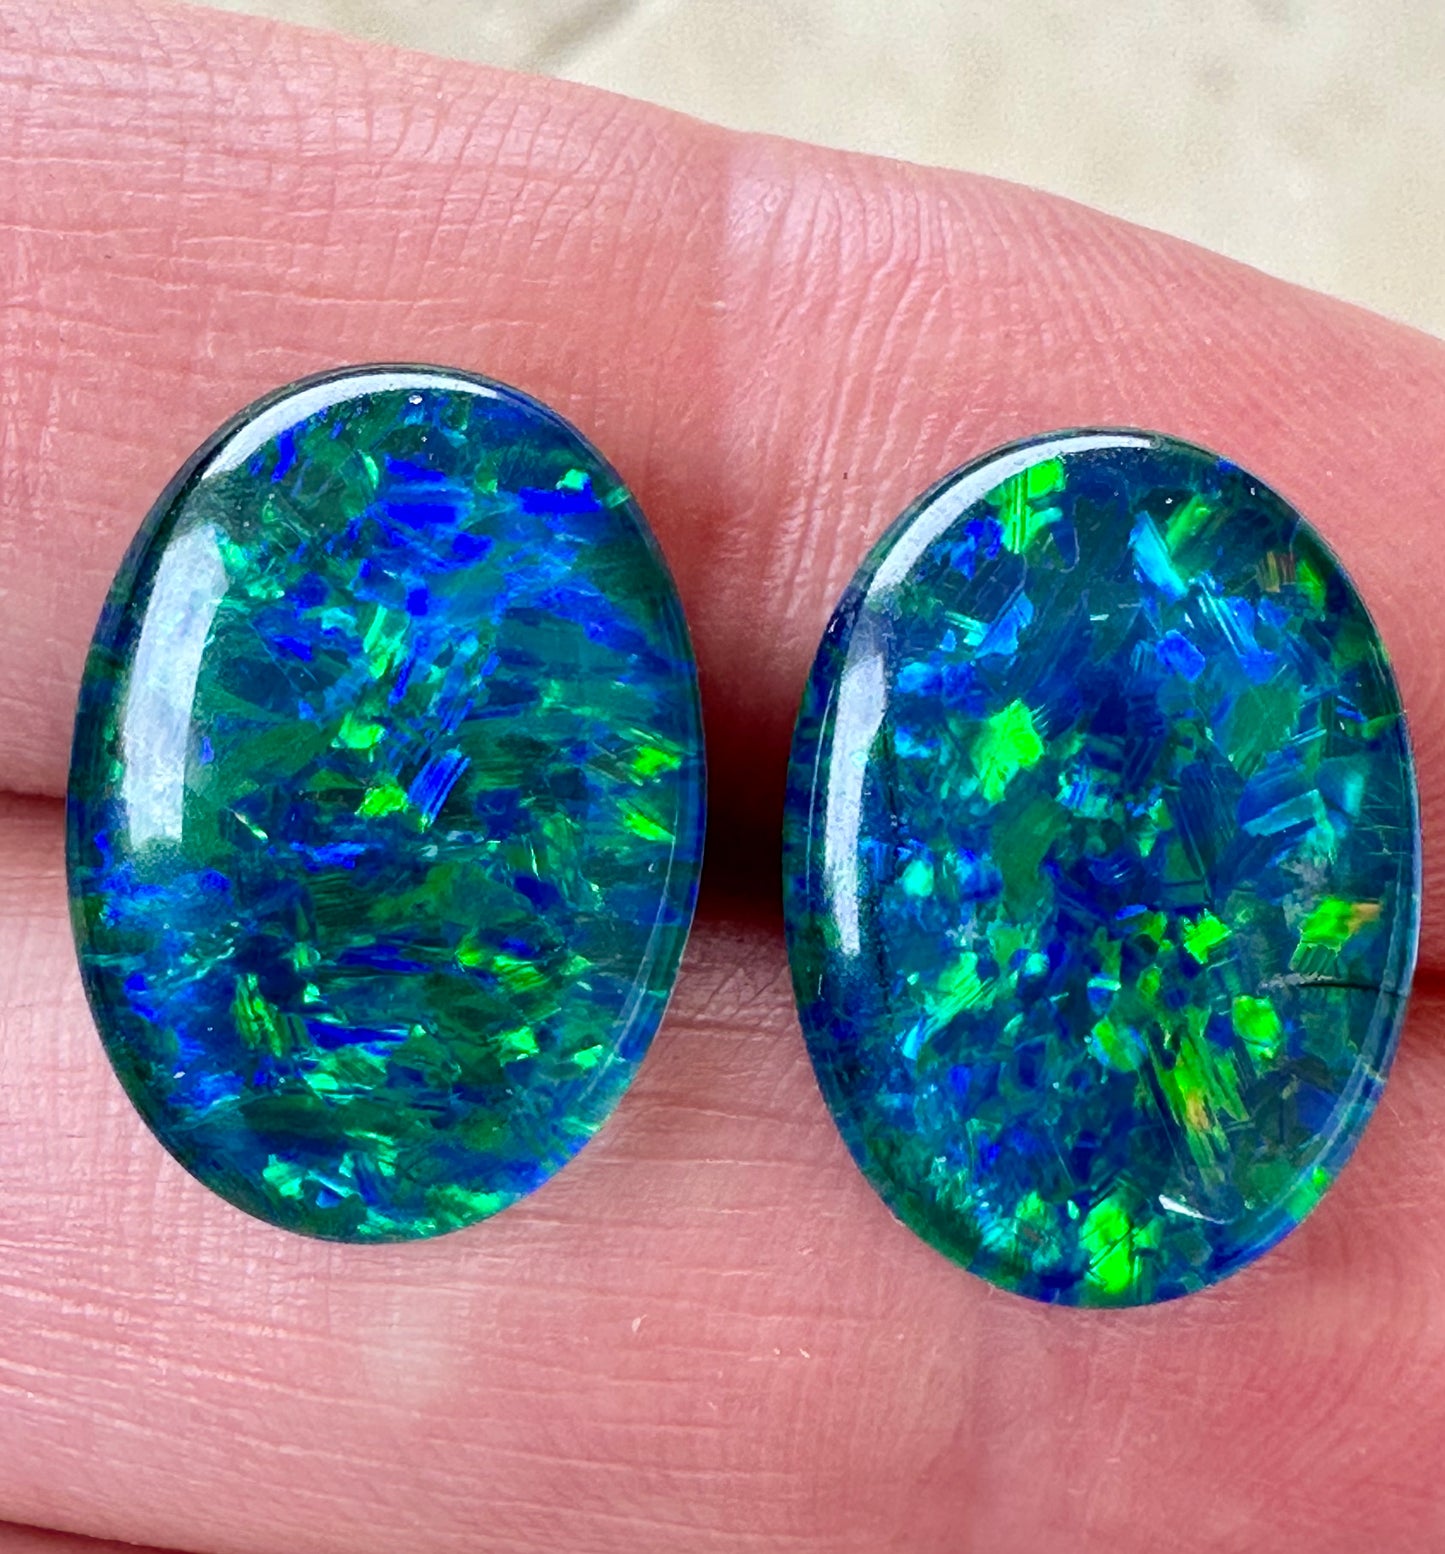 Large Australian gem grade opal triplets 18x13mm